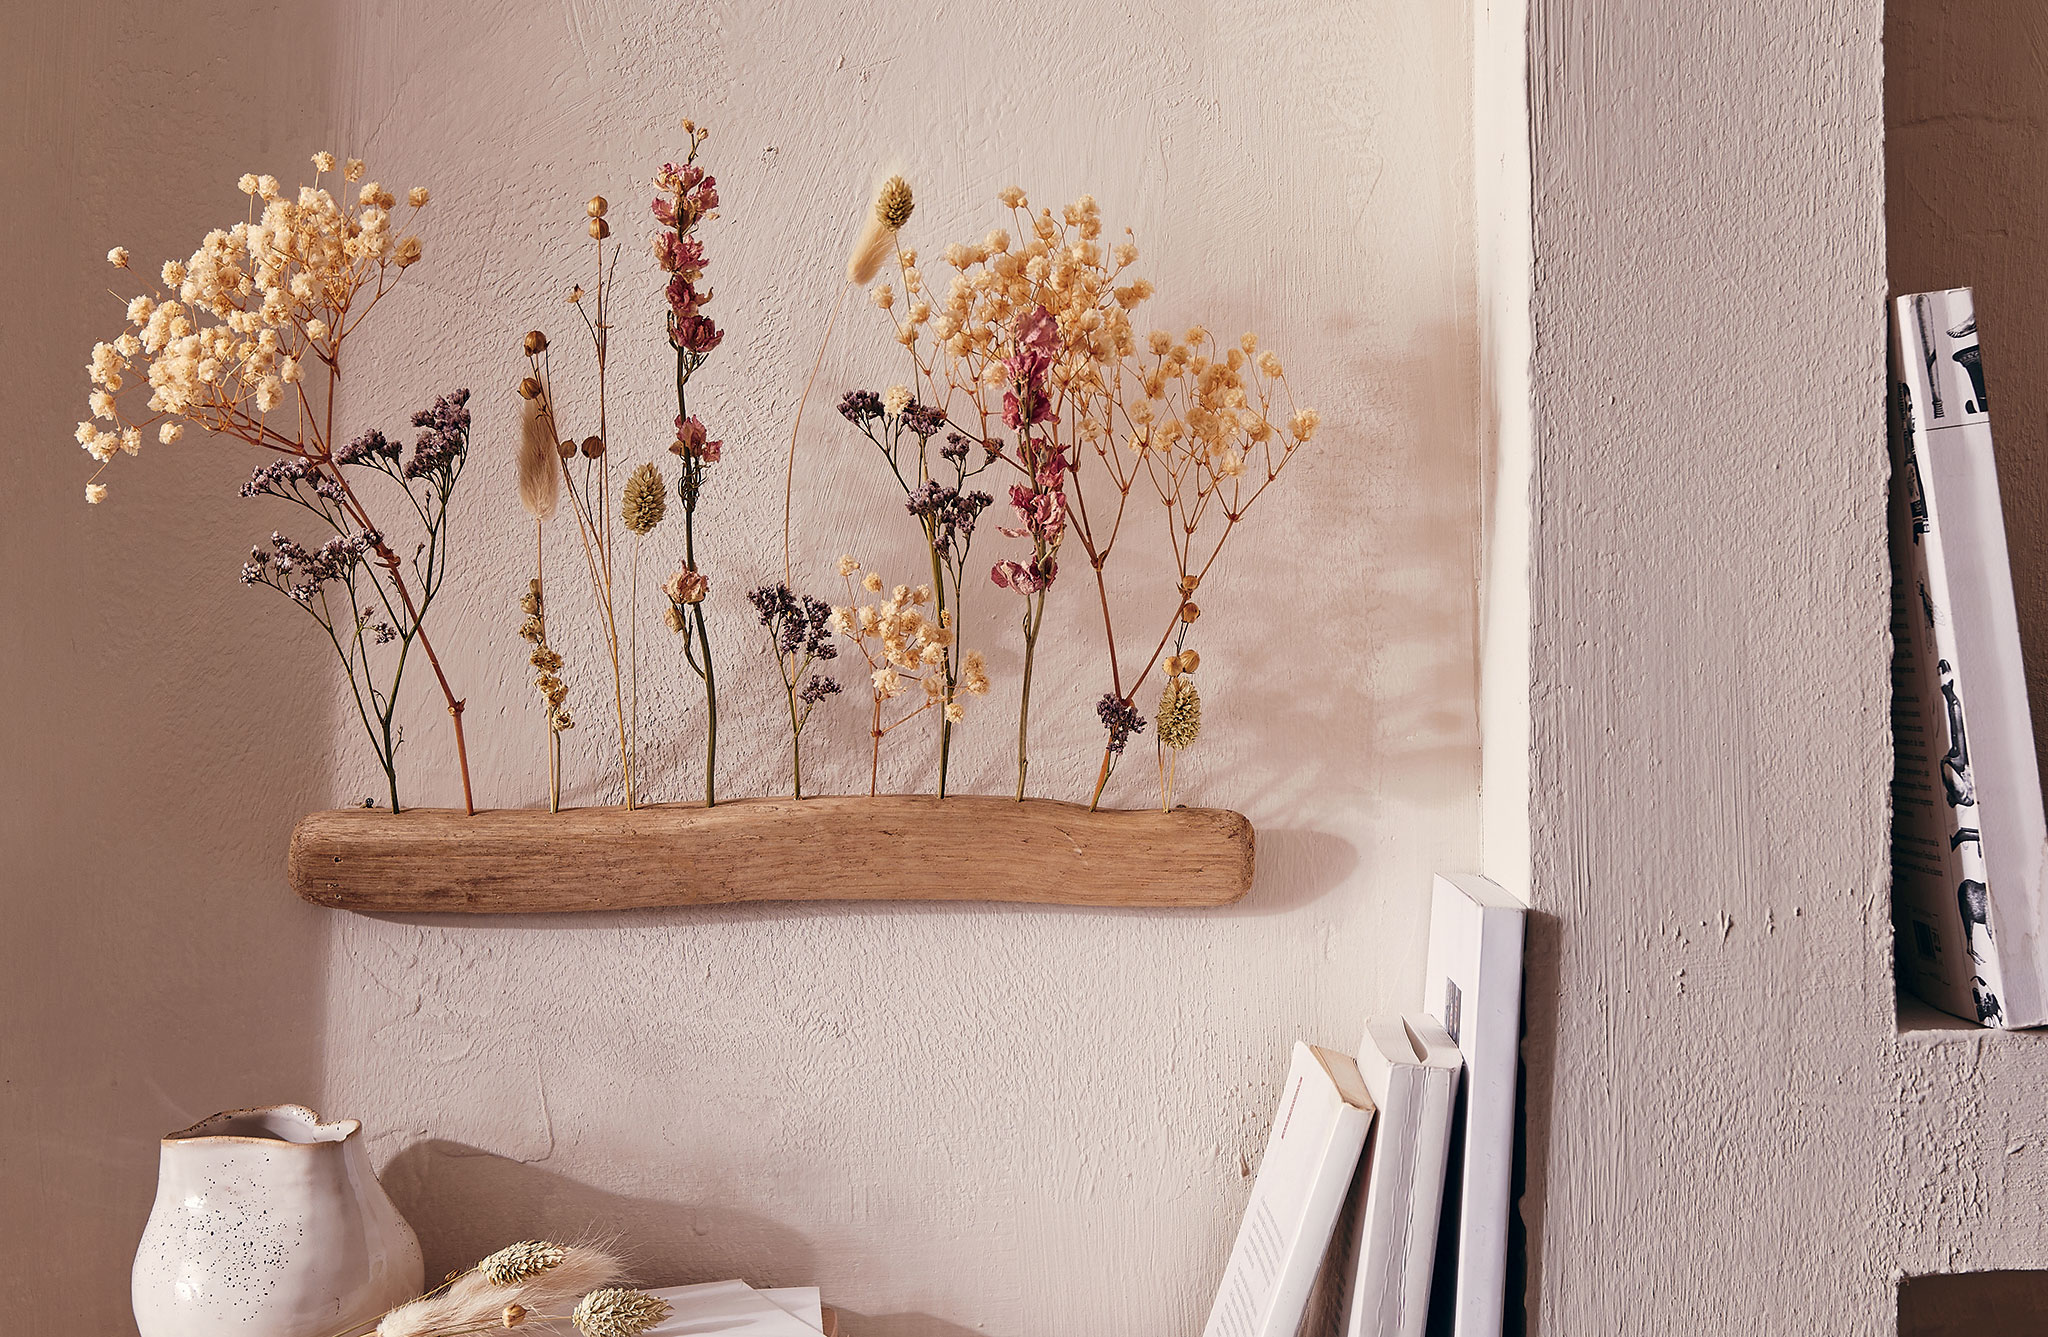 Réaliser une déco murale avec des fleurs séchées et du bois flotté - Depuis  mon hamac